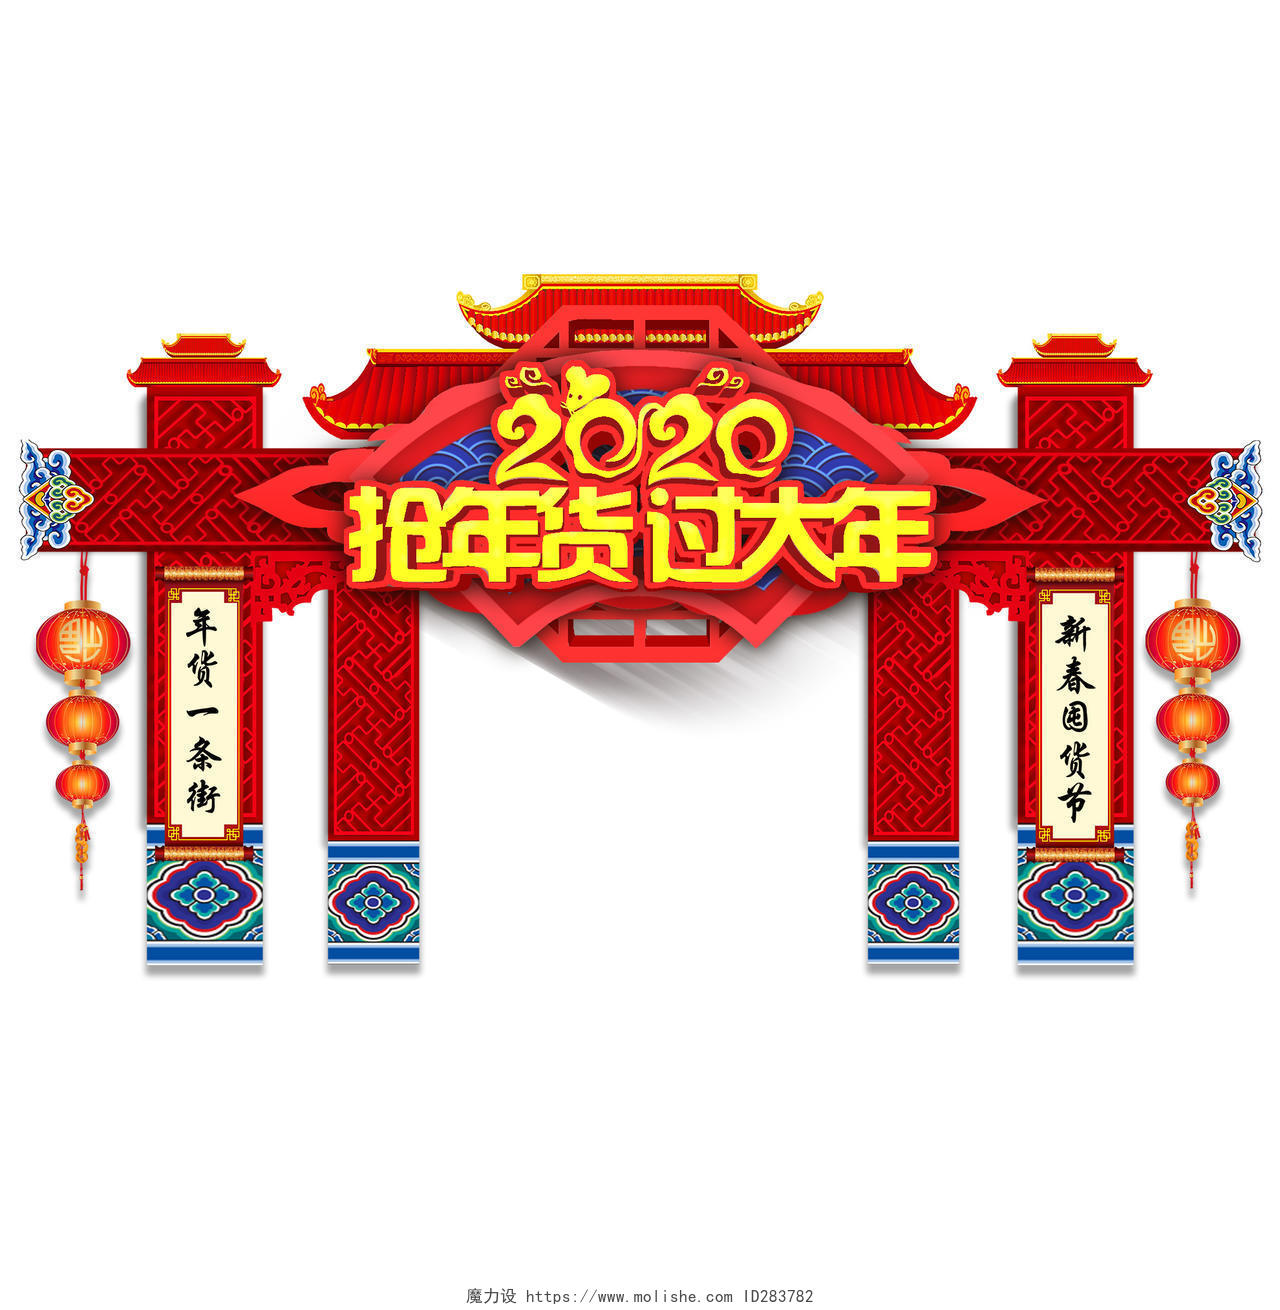 门楼红色大气2020抢年货节过大年新年布置拱门门头